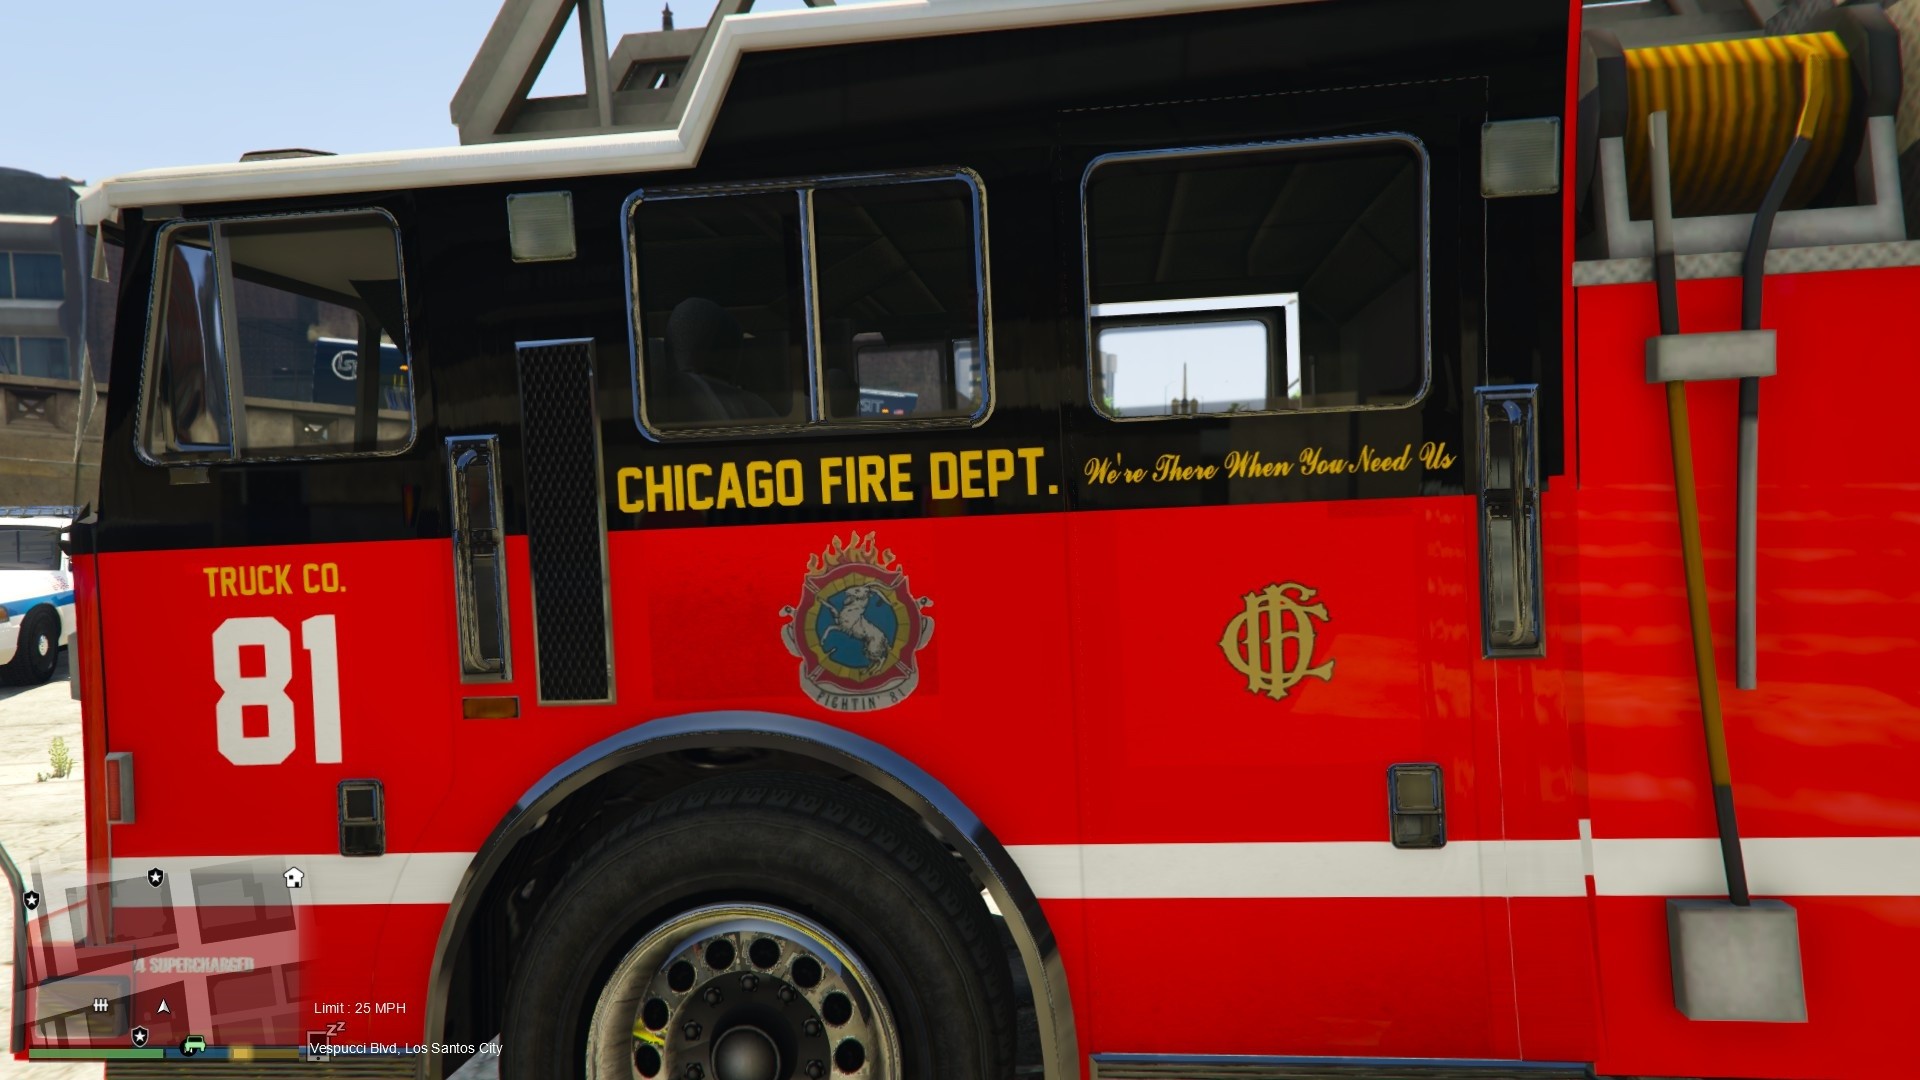 1920x1080 Chicago Fire Dept. truck 81